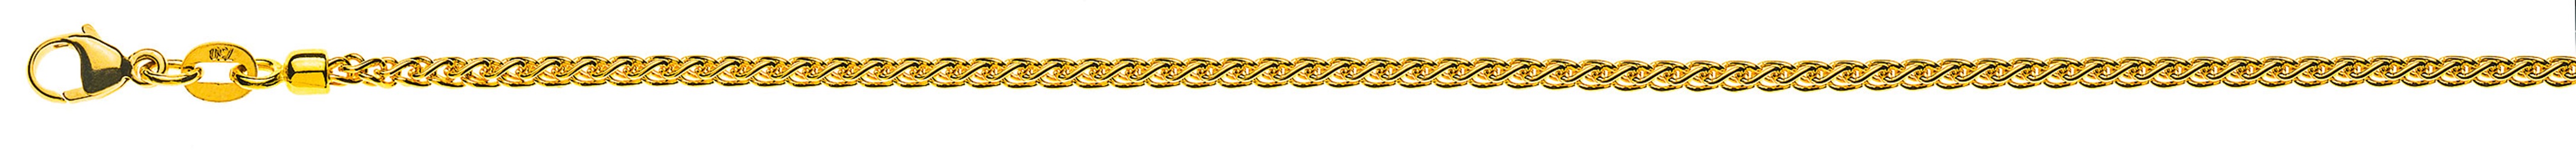 AURONOS Prestige Halskette Gelbgold 18K Zopfkette 40cm 2.15mm